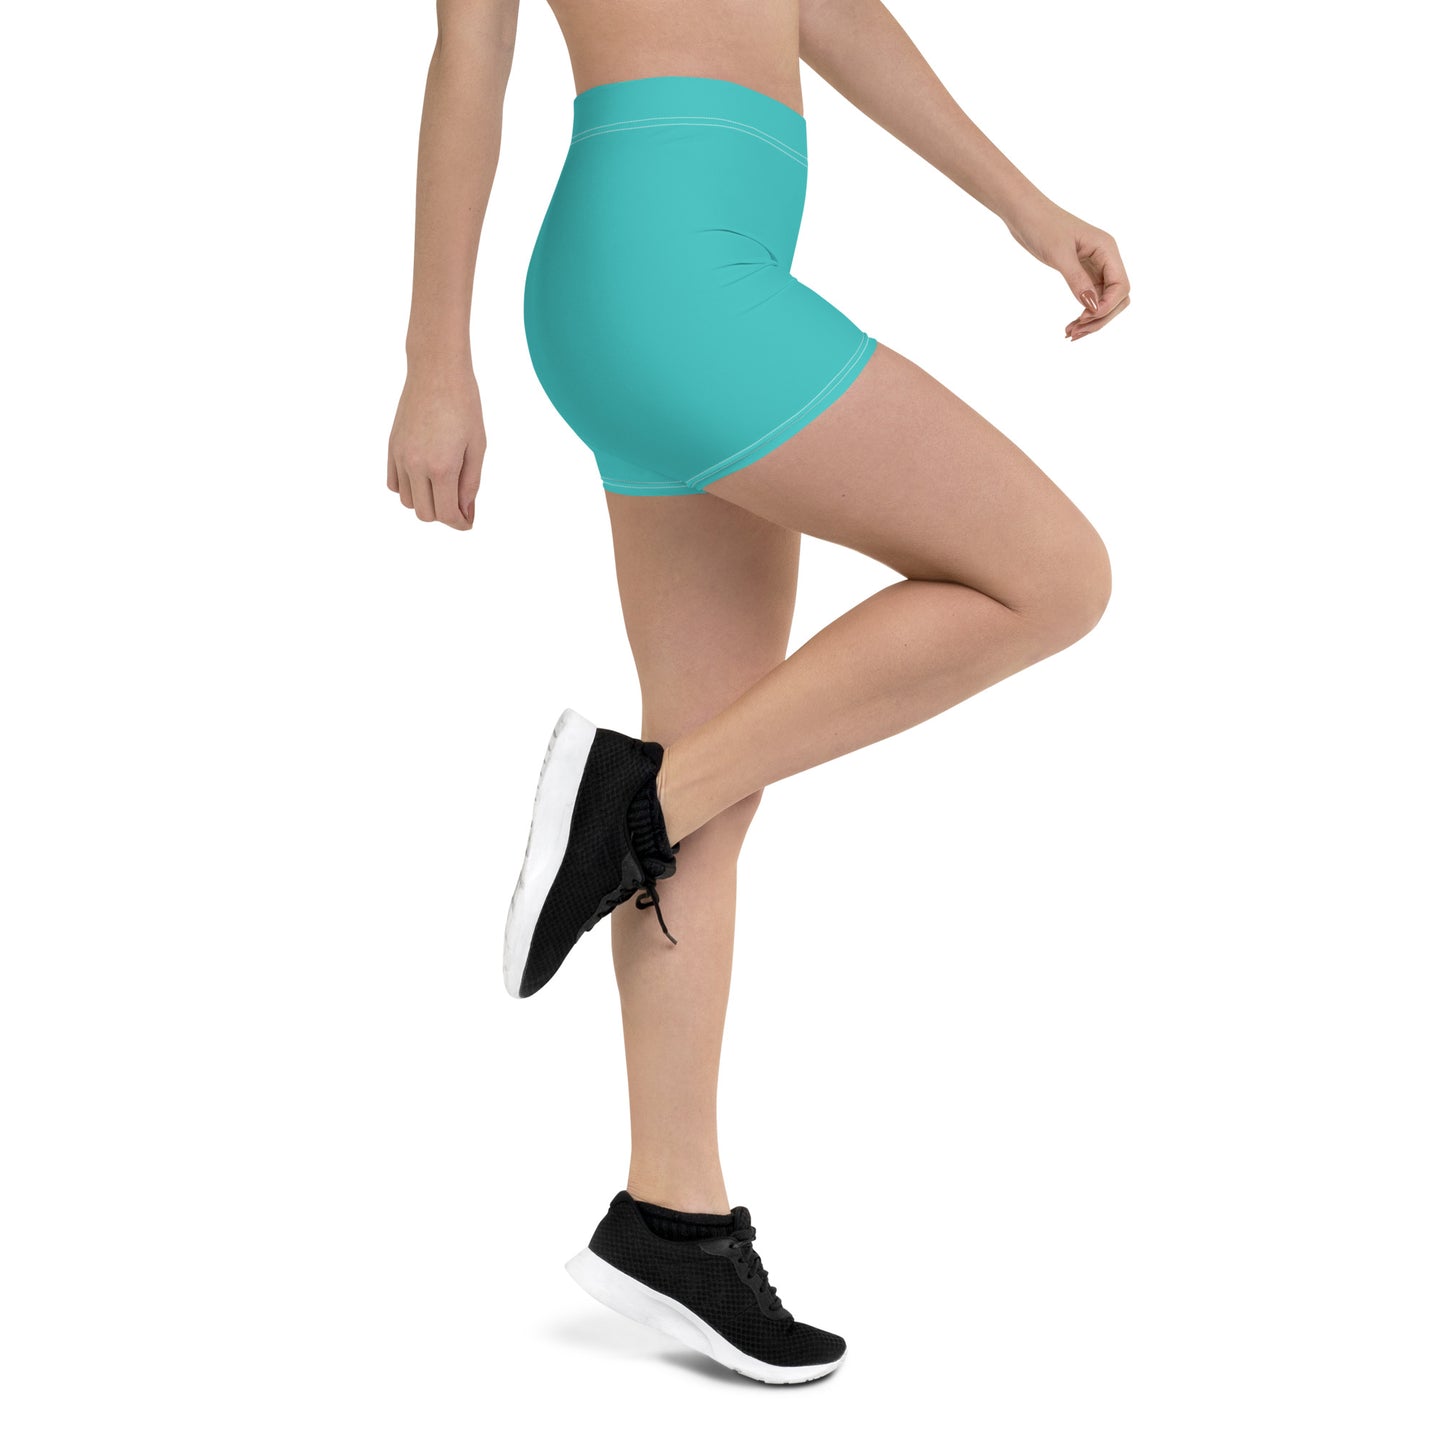 Legging Shorts Yoga & Fitness Turquoise